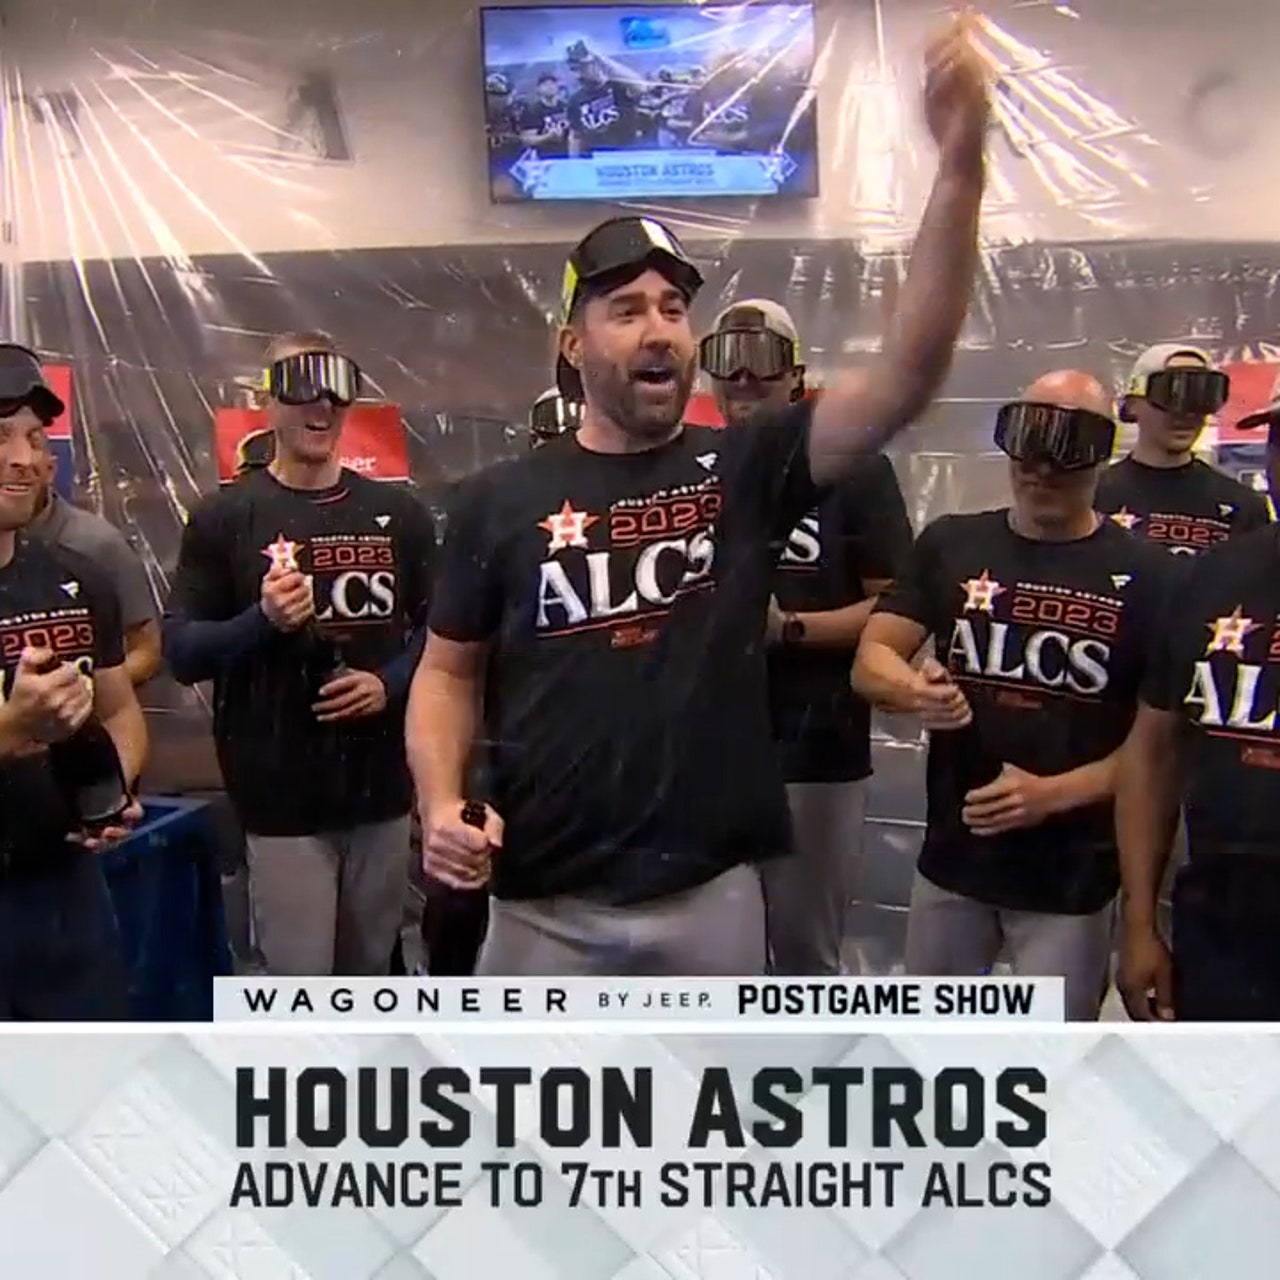 Houston Astros: Justin Verlander's timeline as team's ace